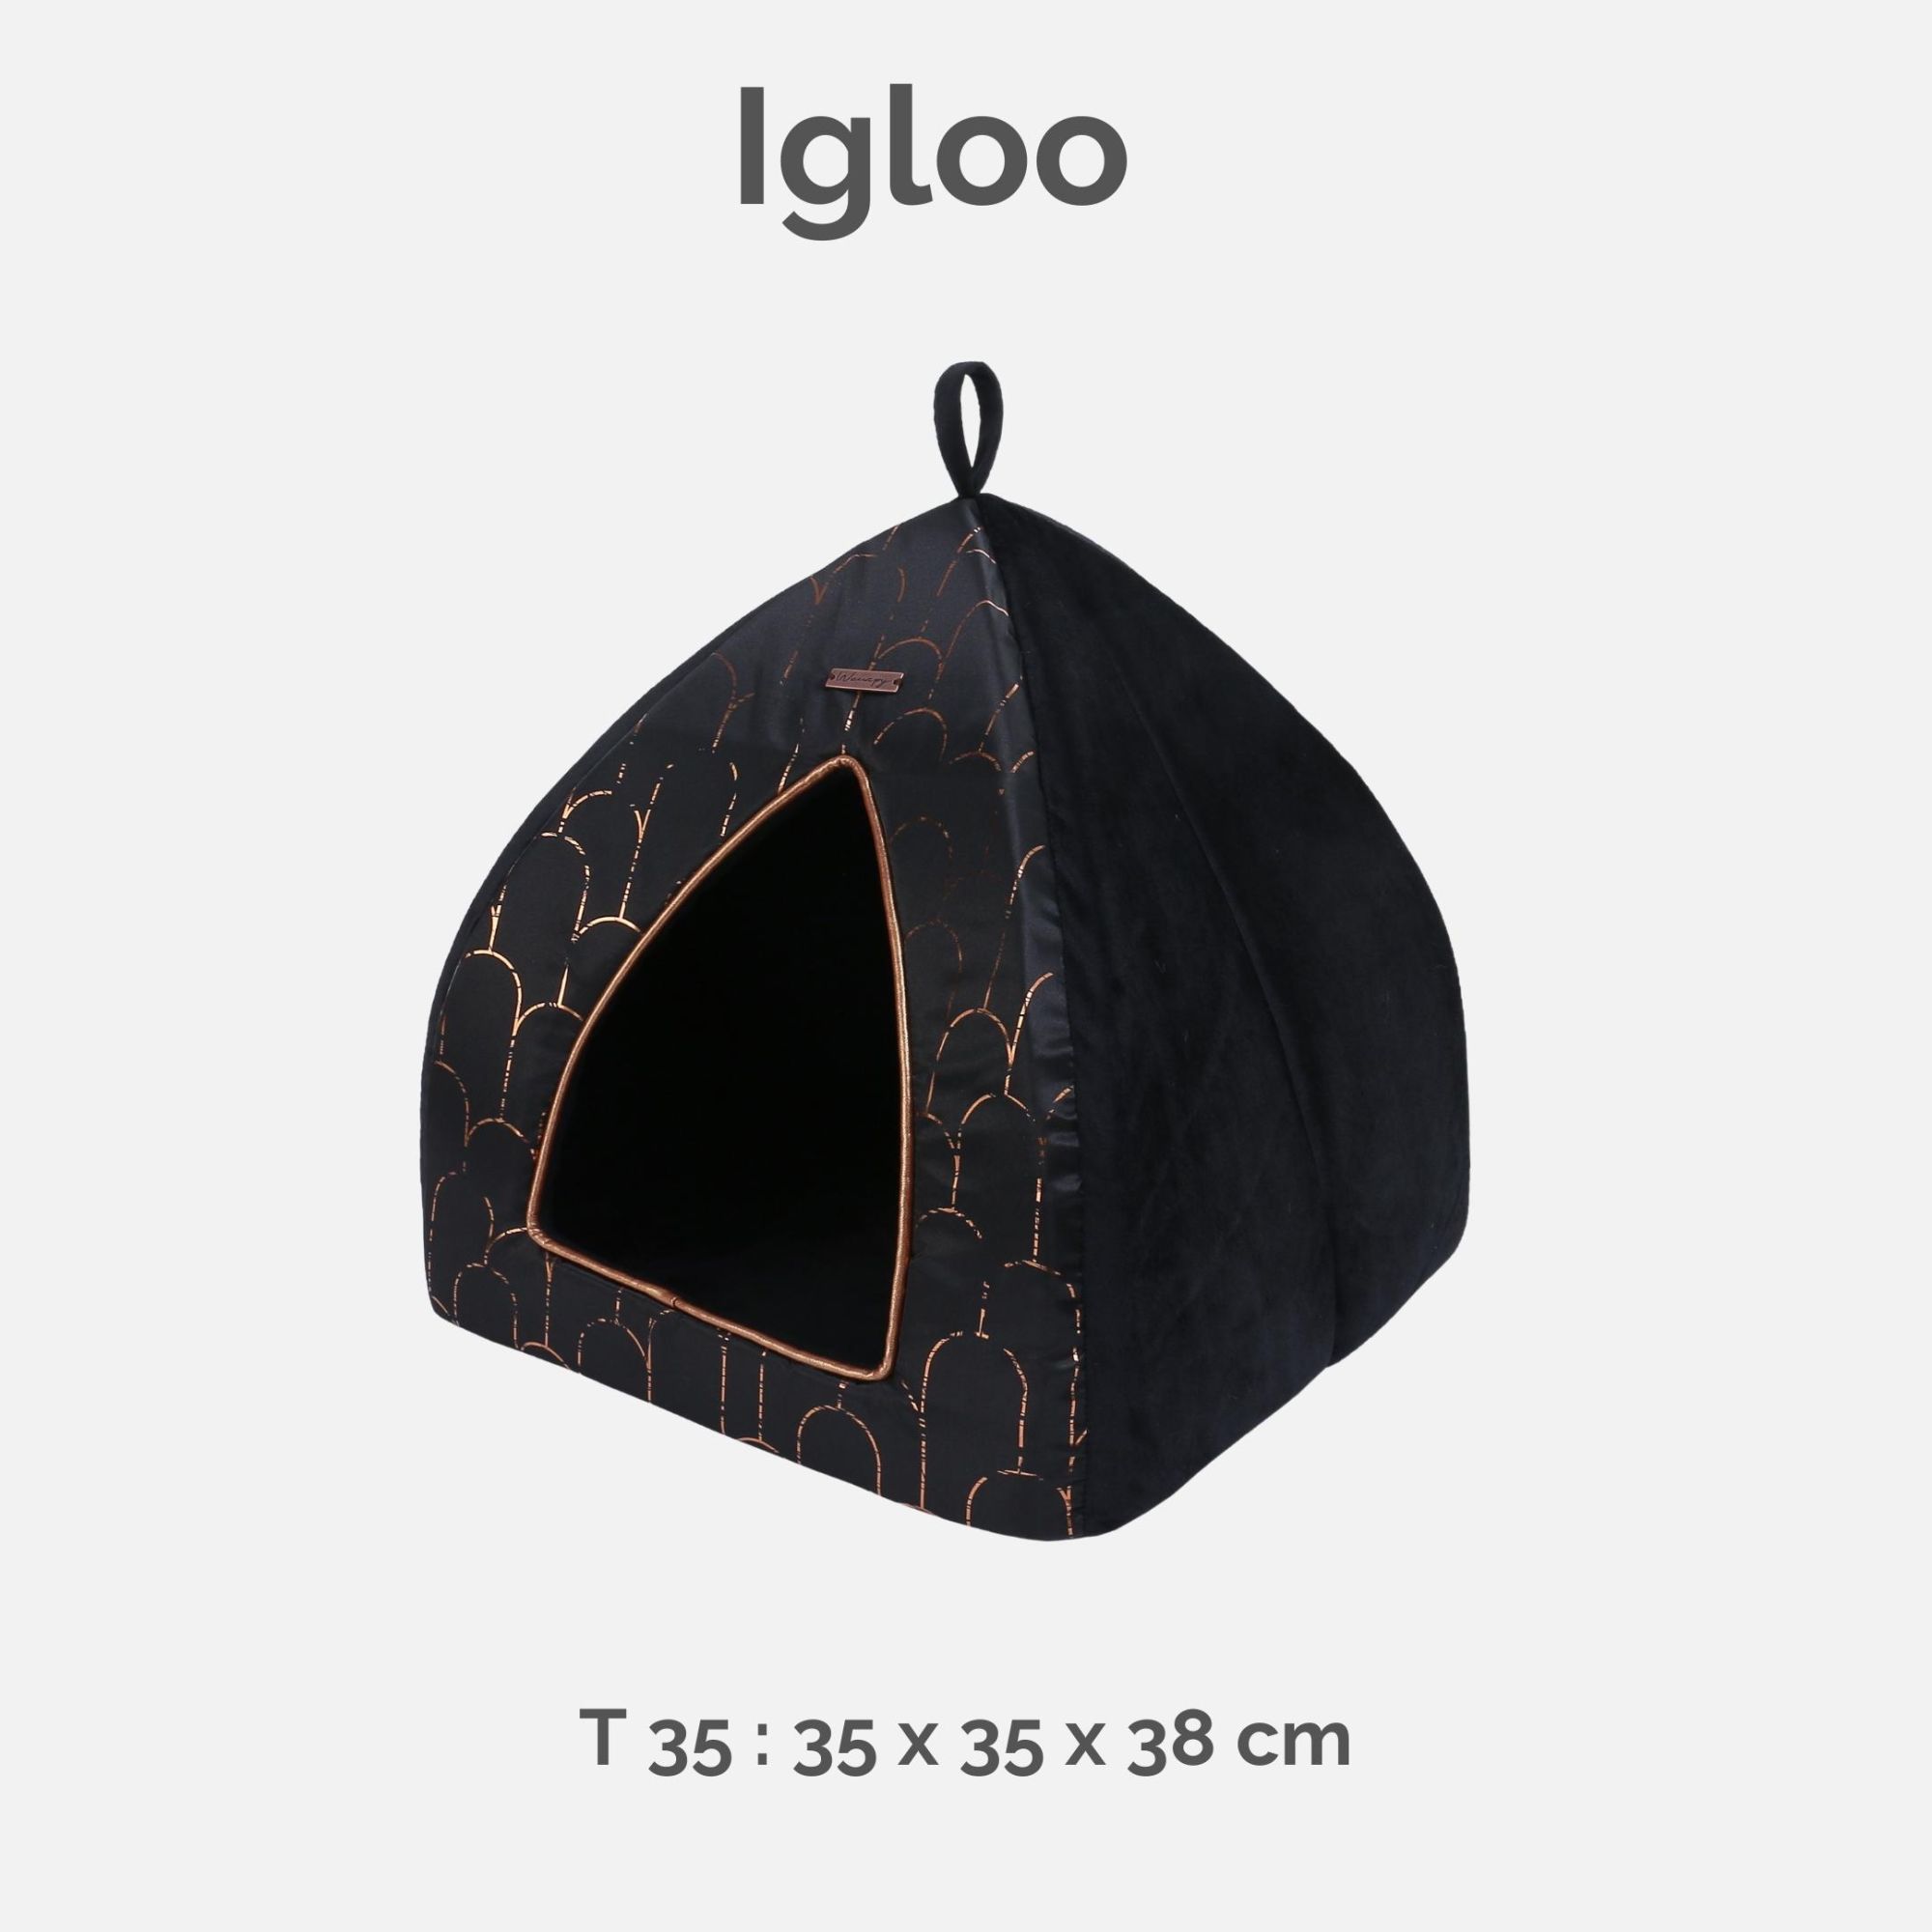 Igloo roof